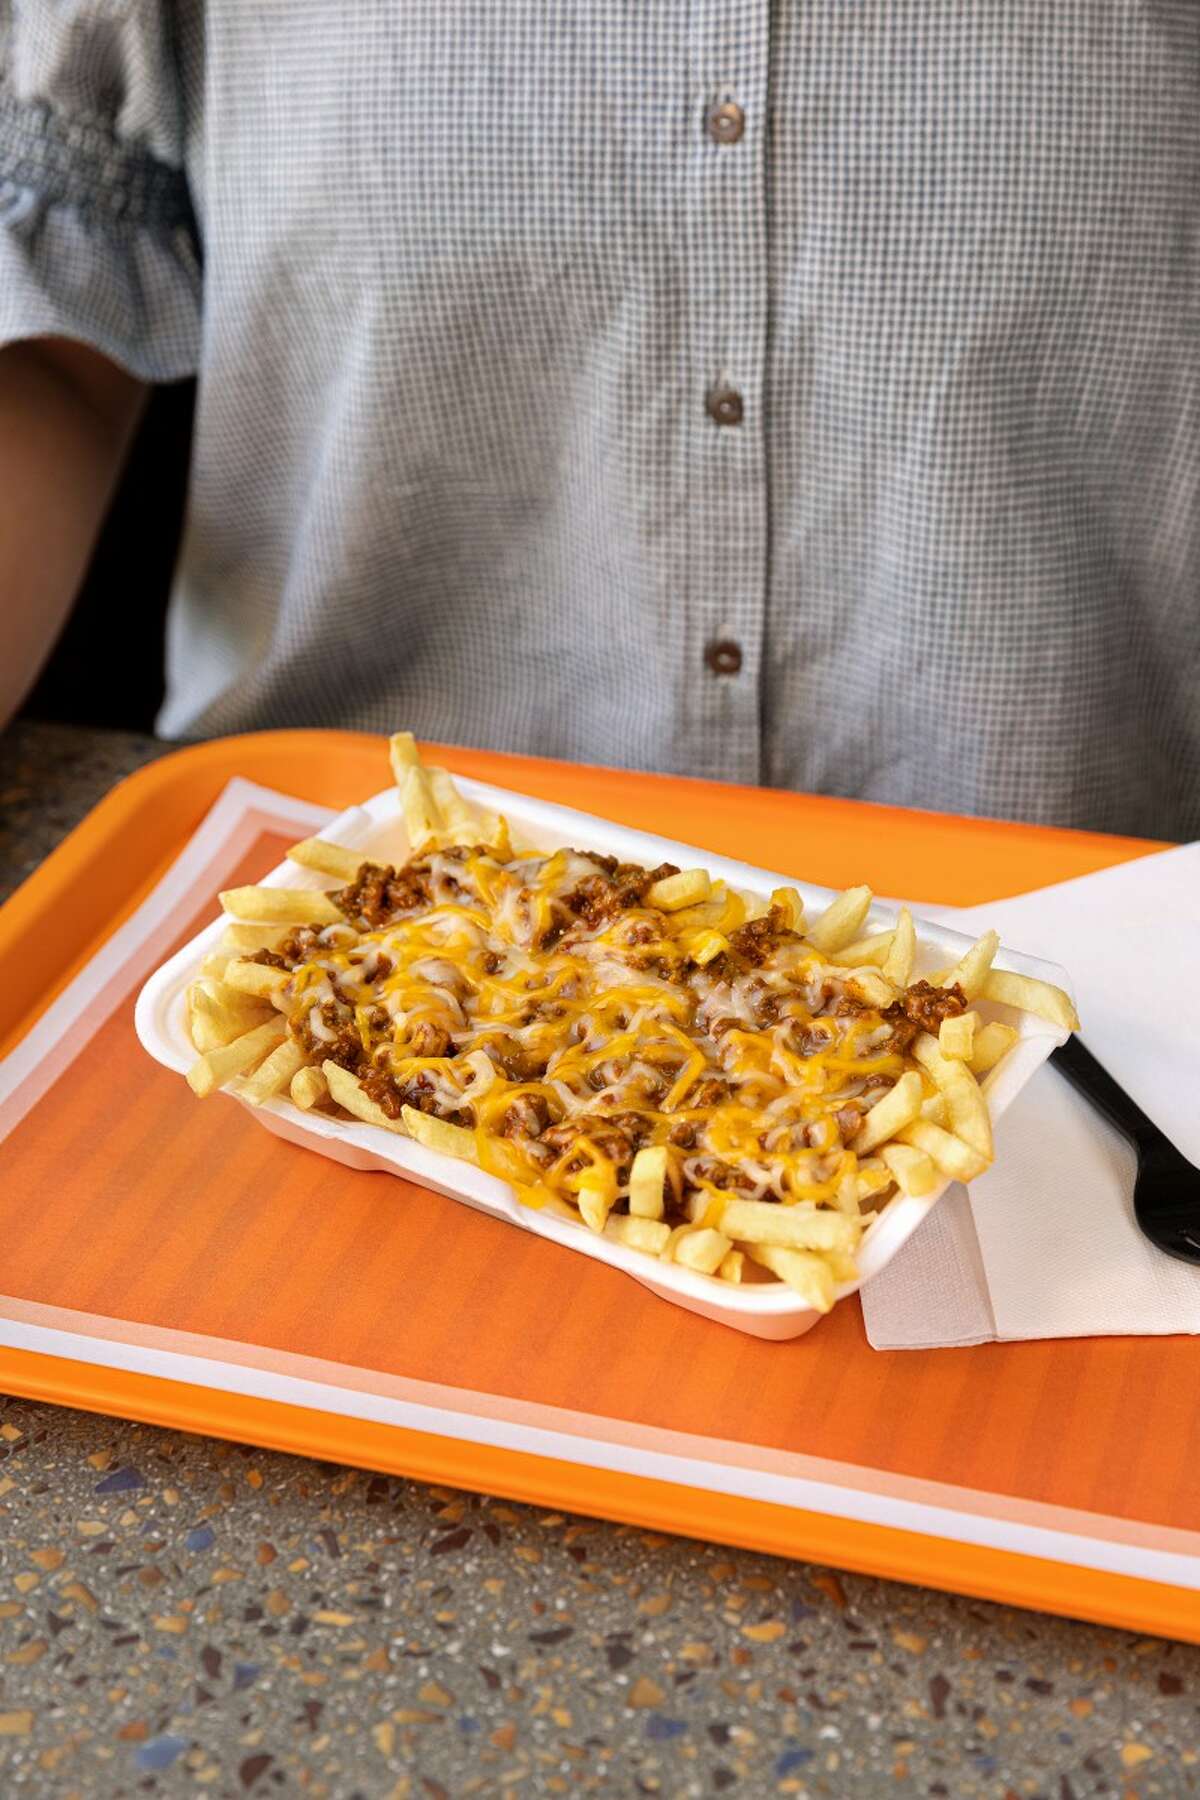 Whataburger unveils new chili cheese fries menu item